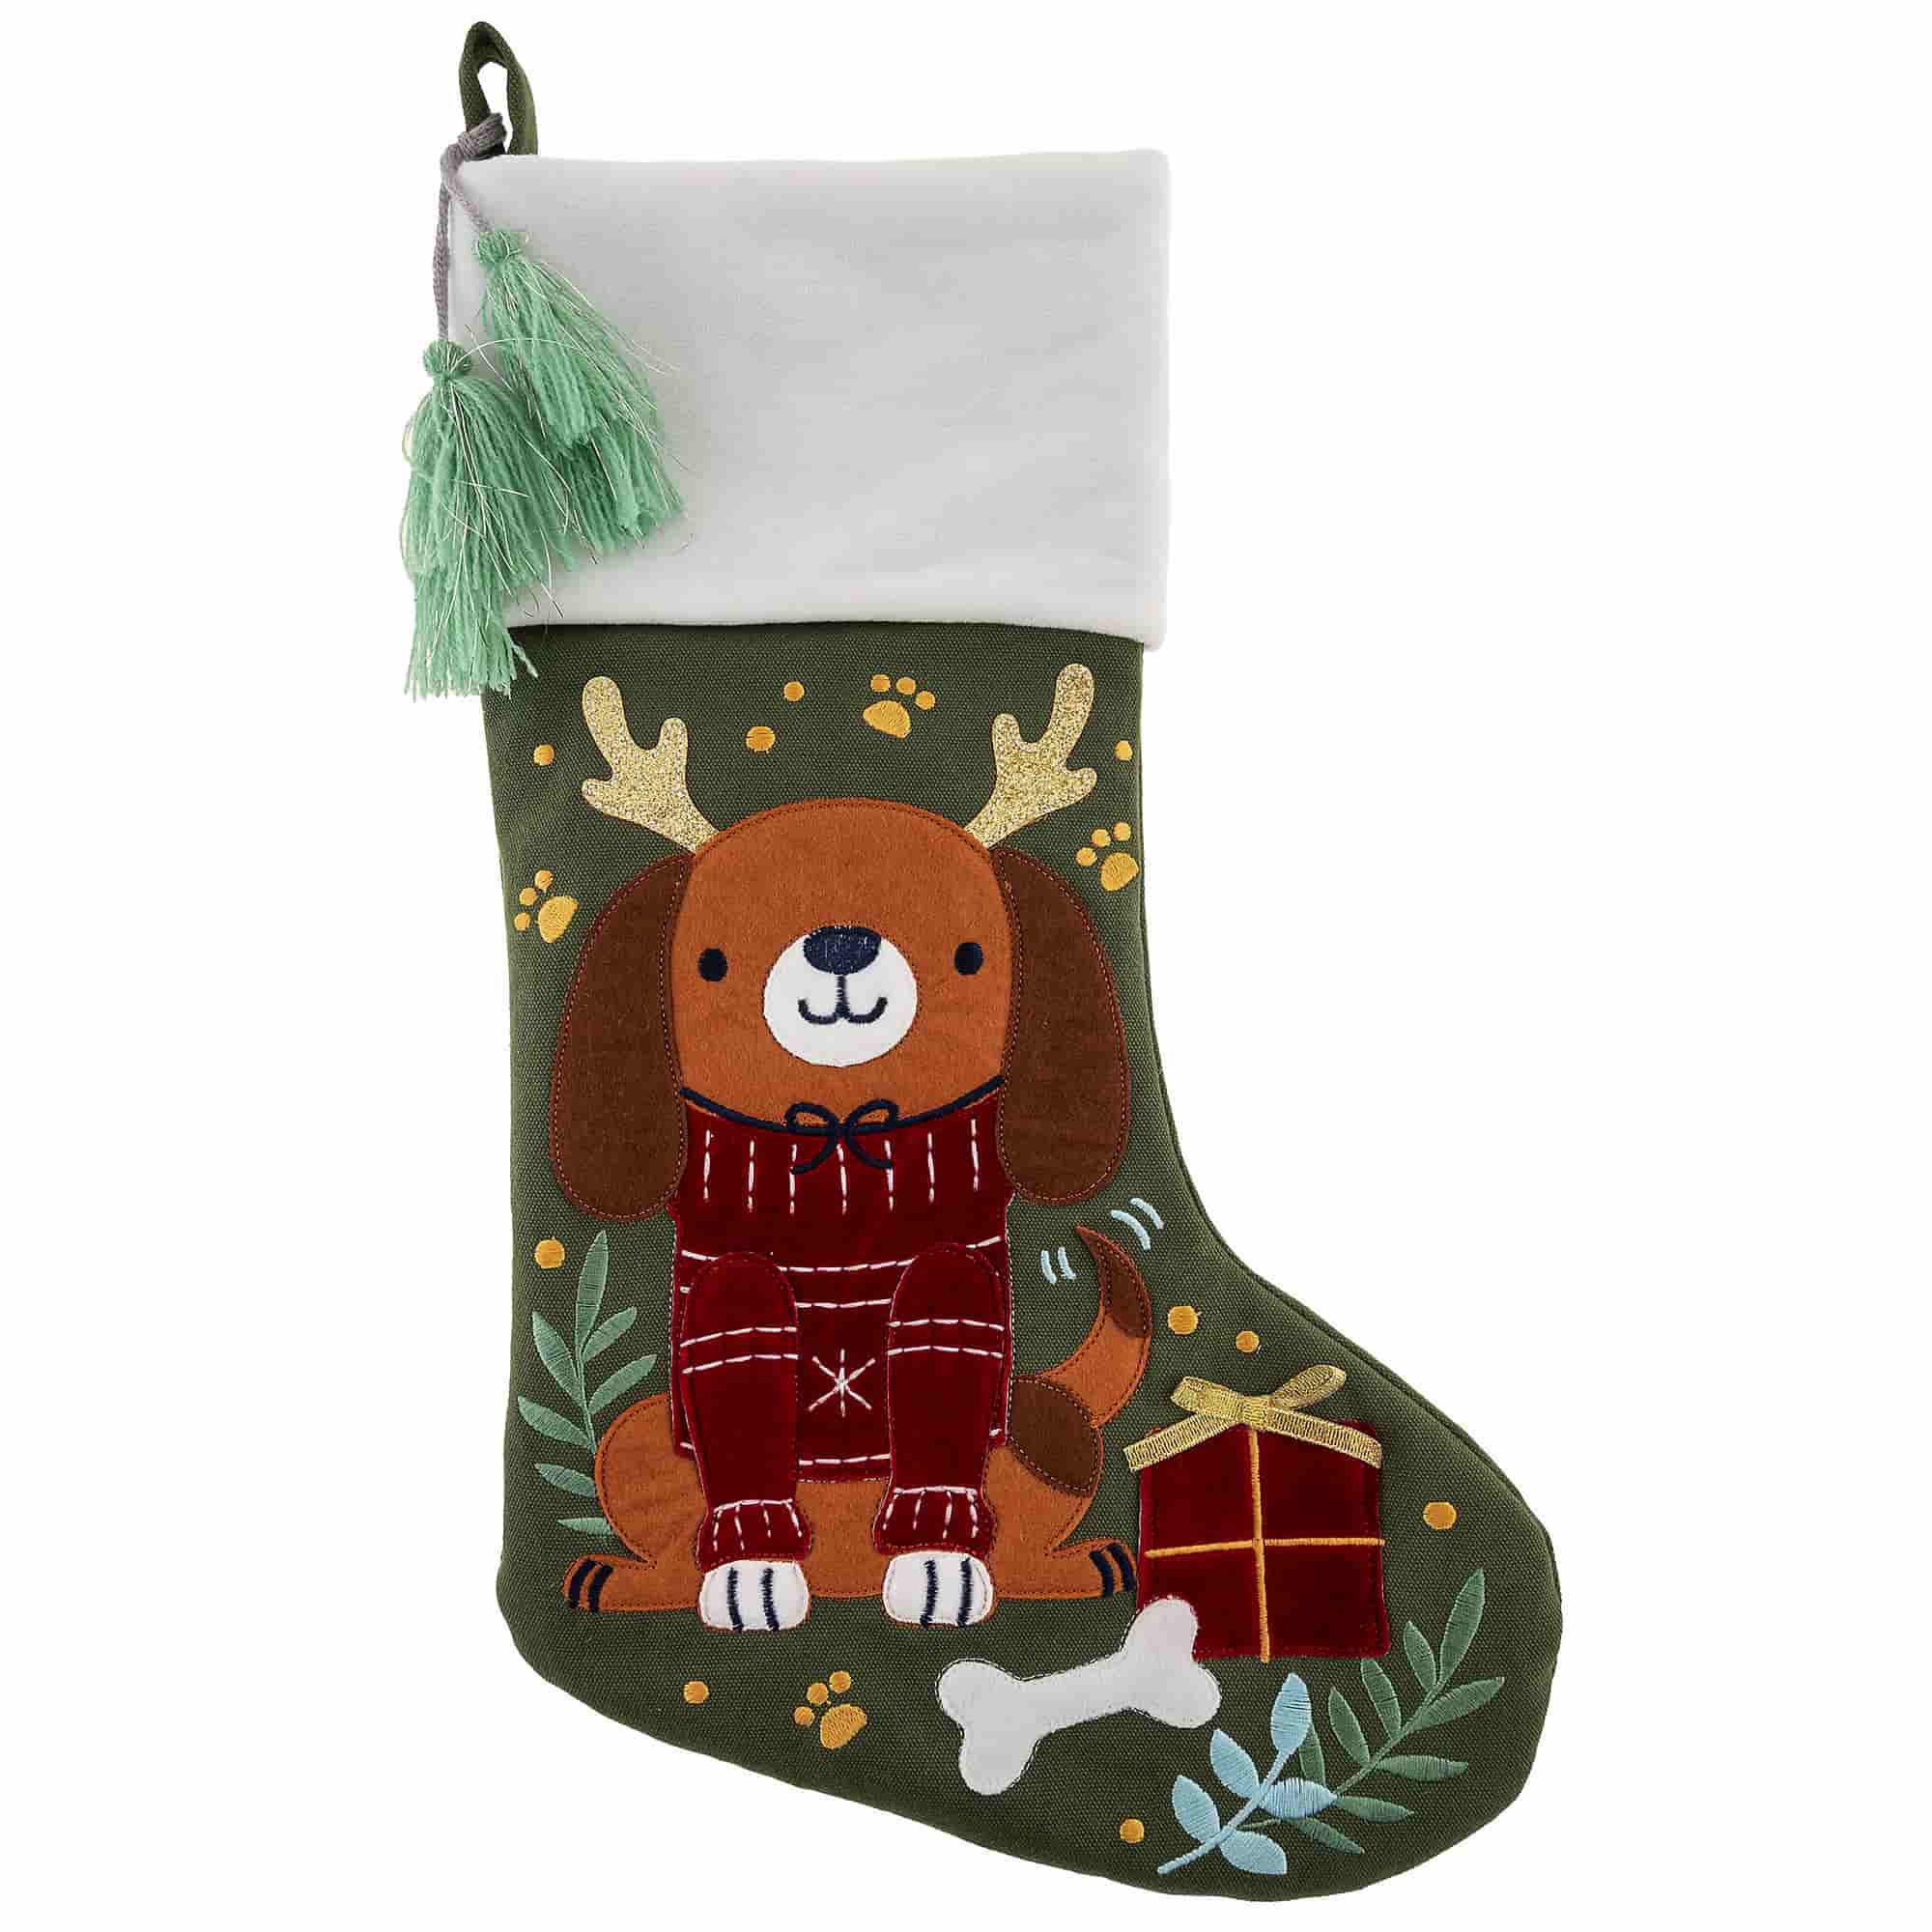 Stephen Joseph character dog needlepoint stockings - needlepoint christmas stockings 